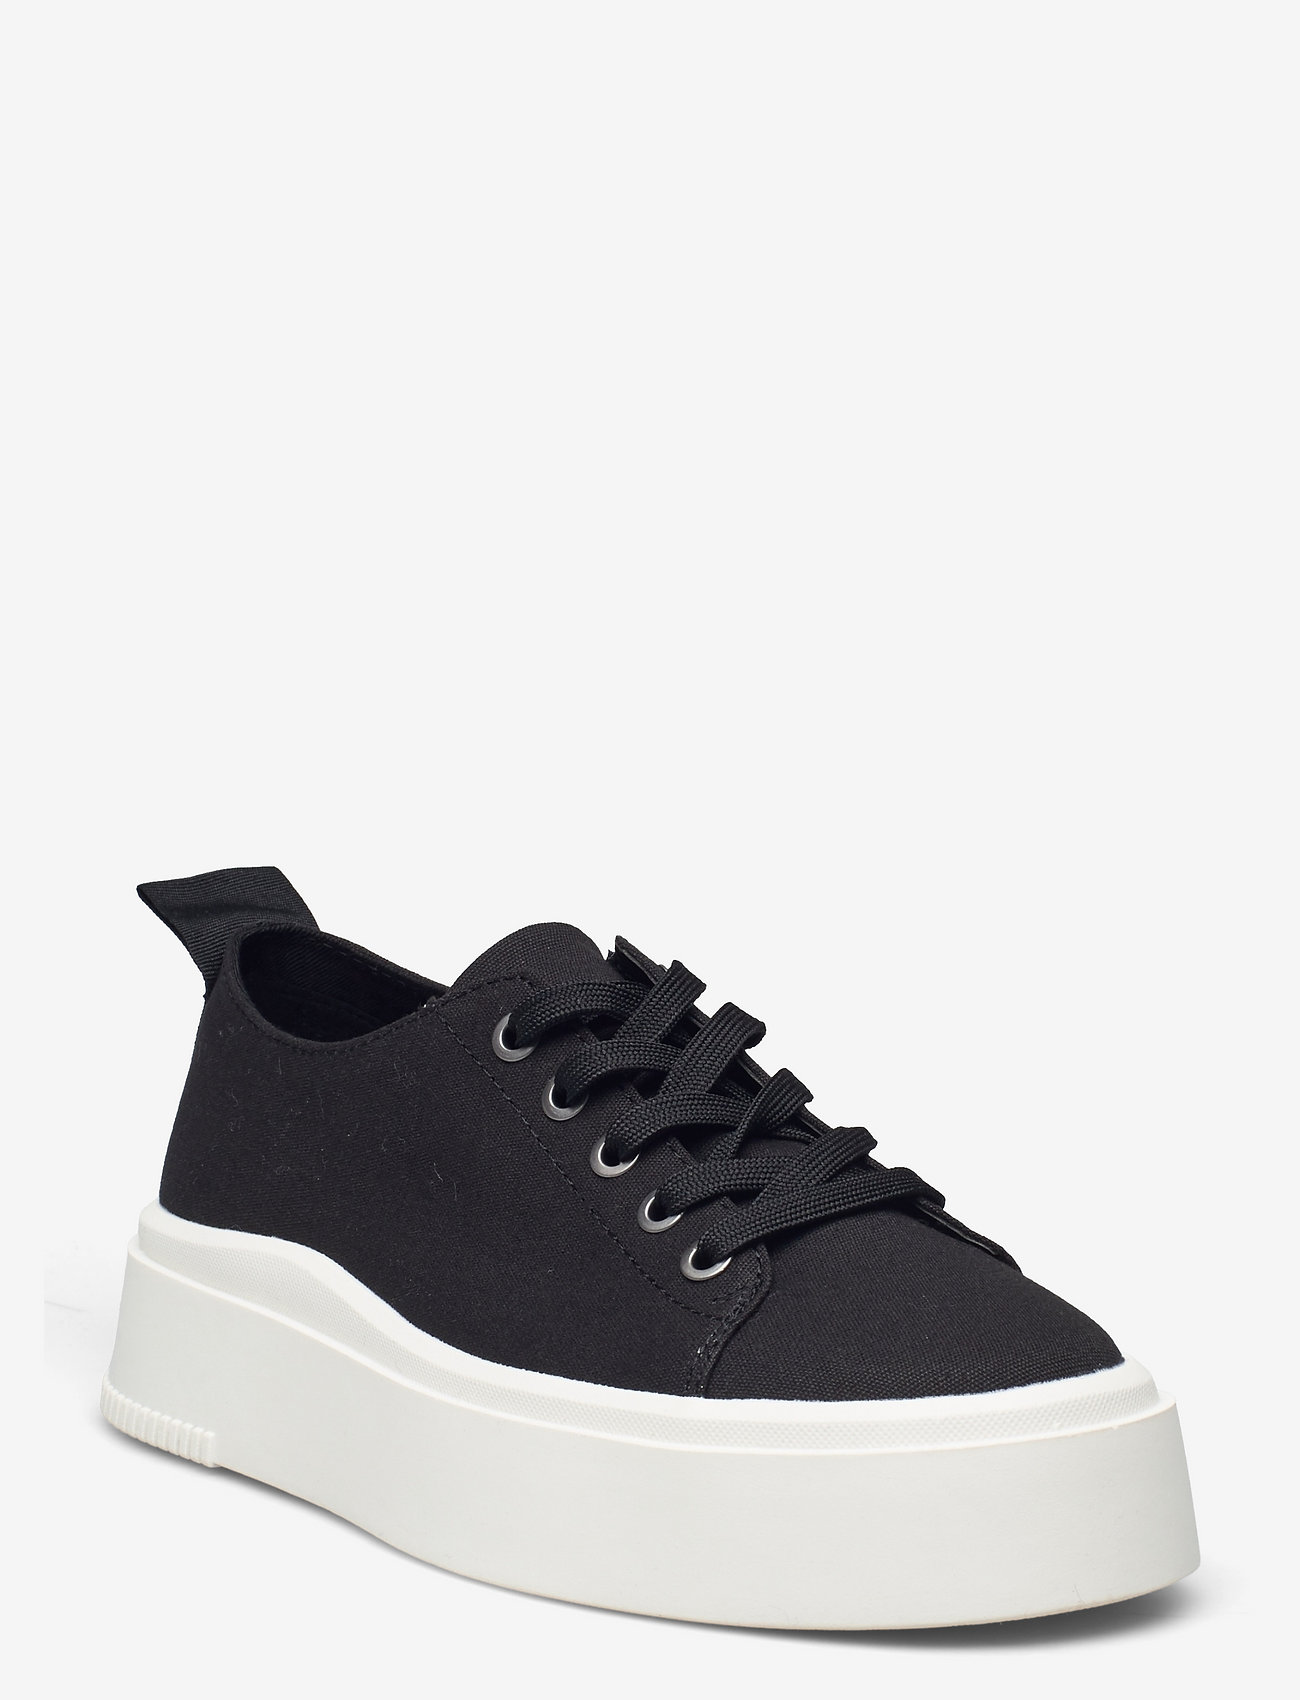 VAGABOND - STACY - niedrige sneakers - black - 0